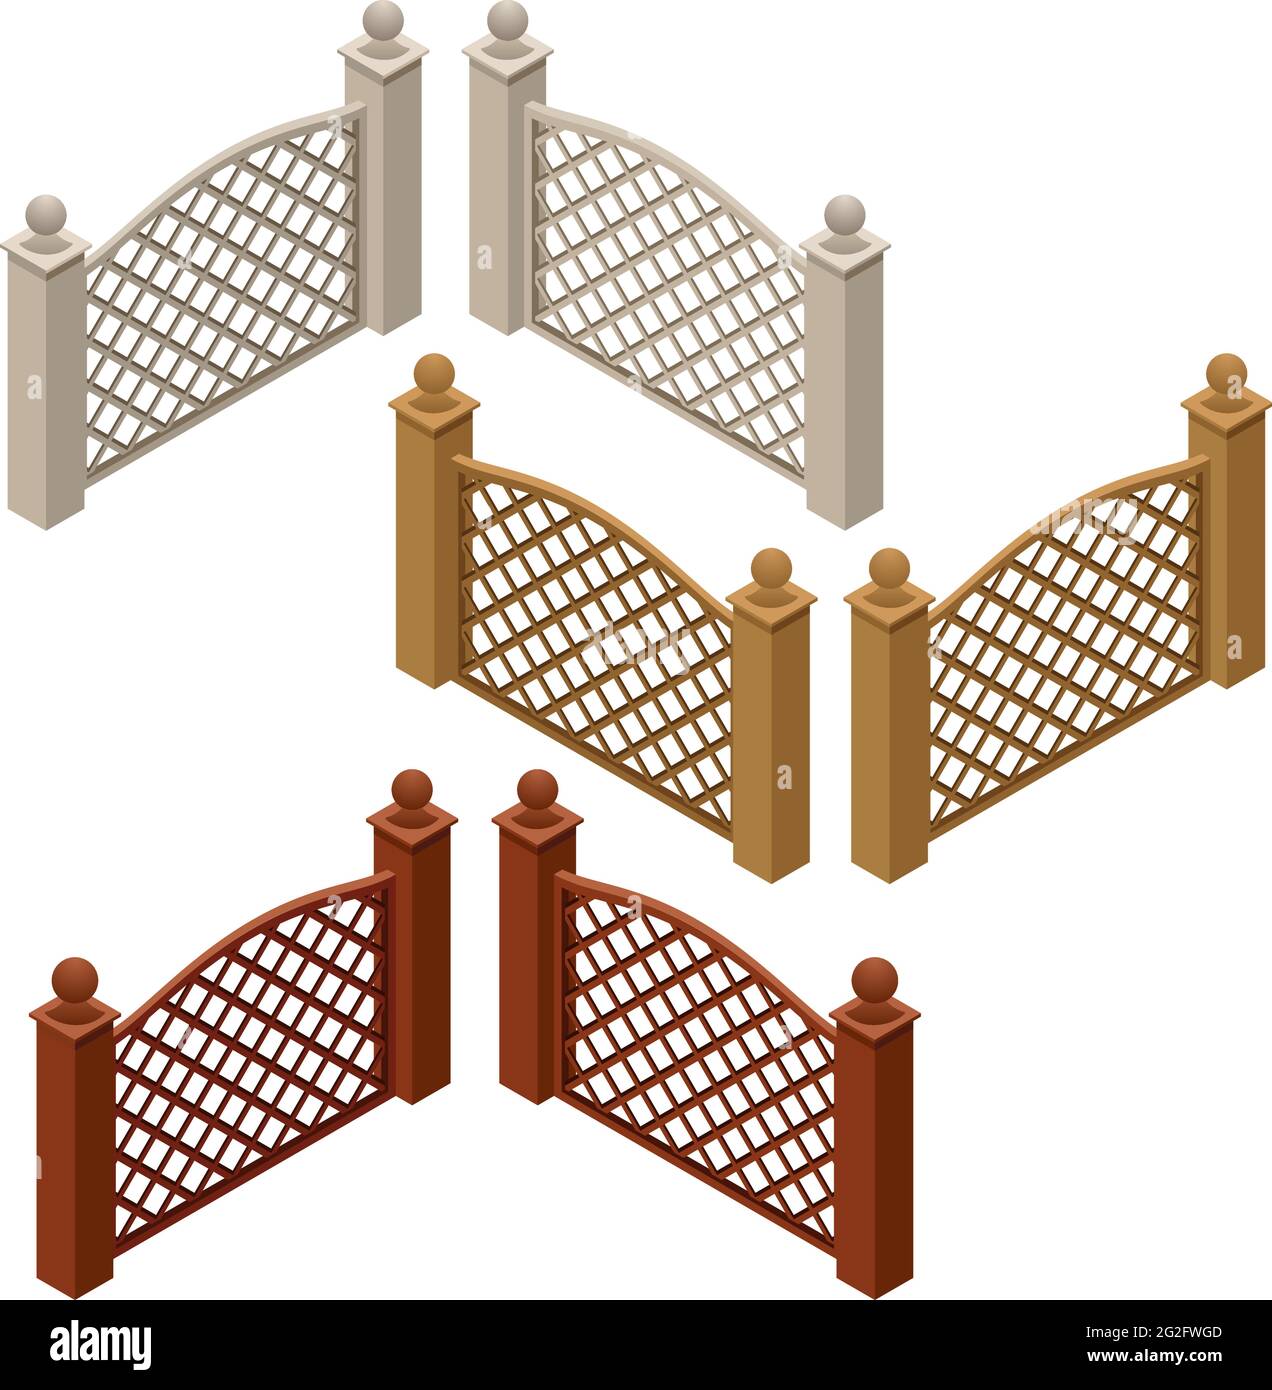 Ensemble de clôtures de ferme ou de jardin isolées sur fond blanc. Vue isométrique, peut être utilisé comme éléments de scène pour un jeu ou un élément de dessin animé. Illustrateur de vecteur Illustration de Vecteur